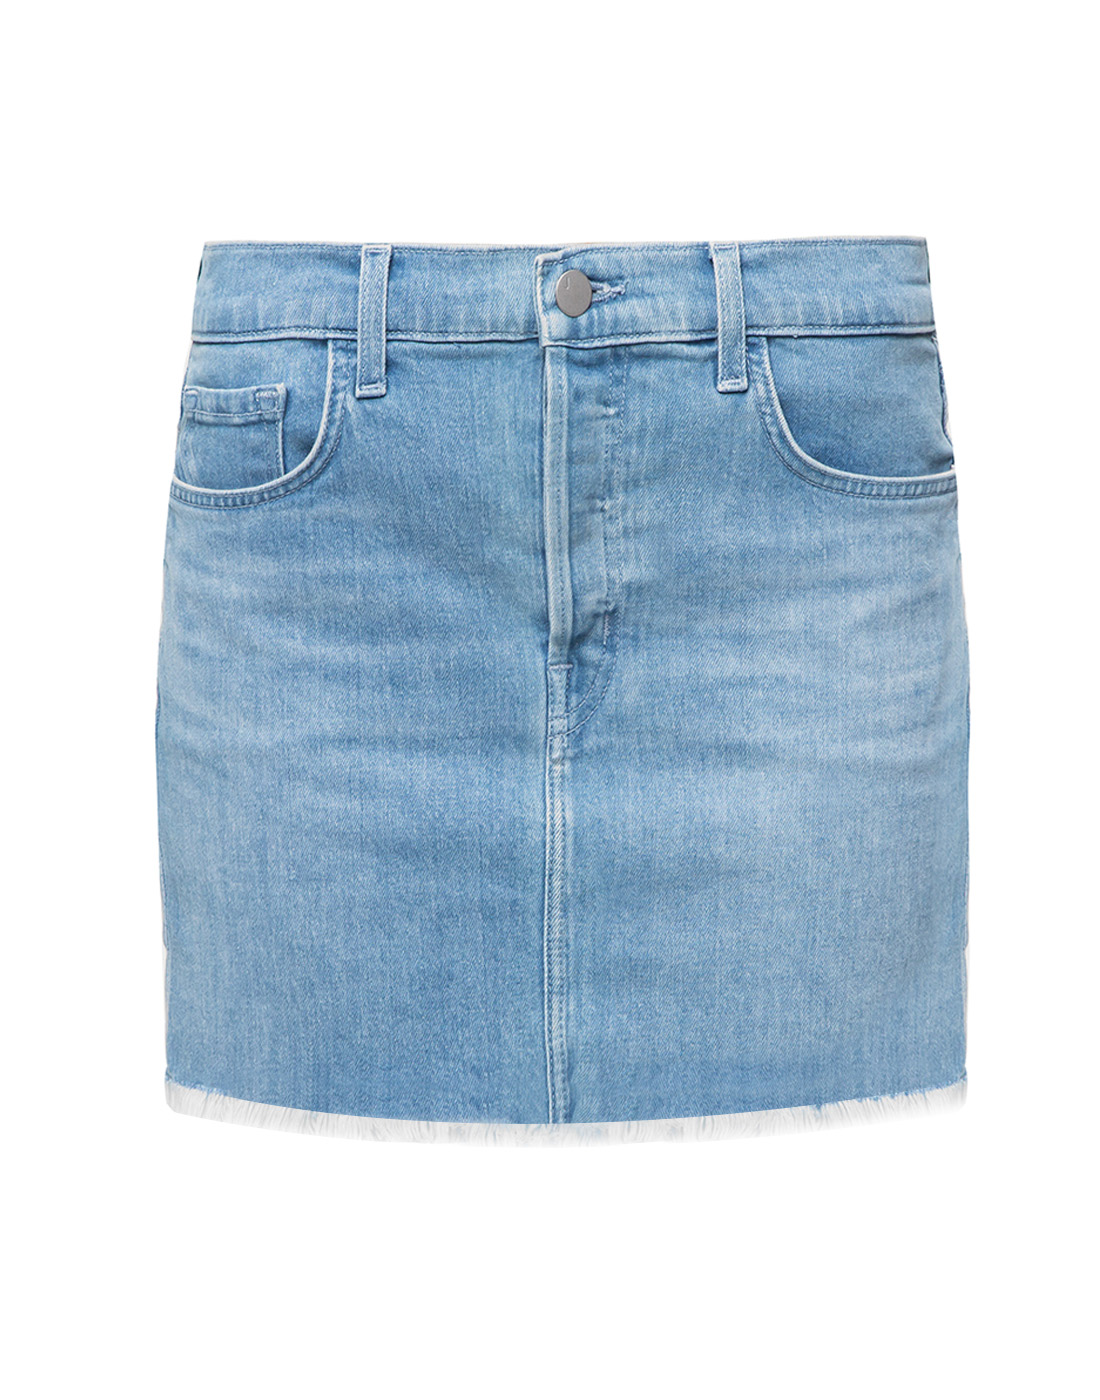 Женская голубая джинсовая юбка J BRAND SJB002042-1